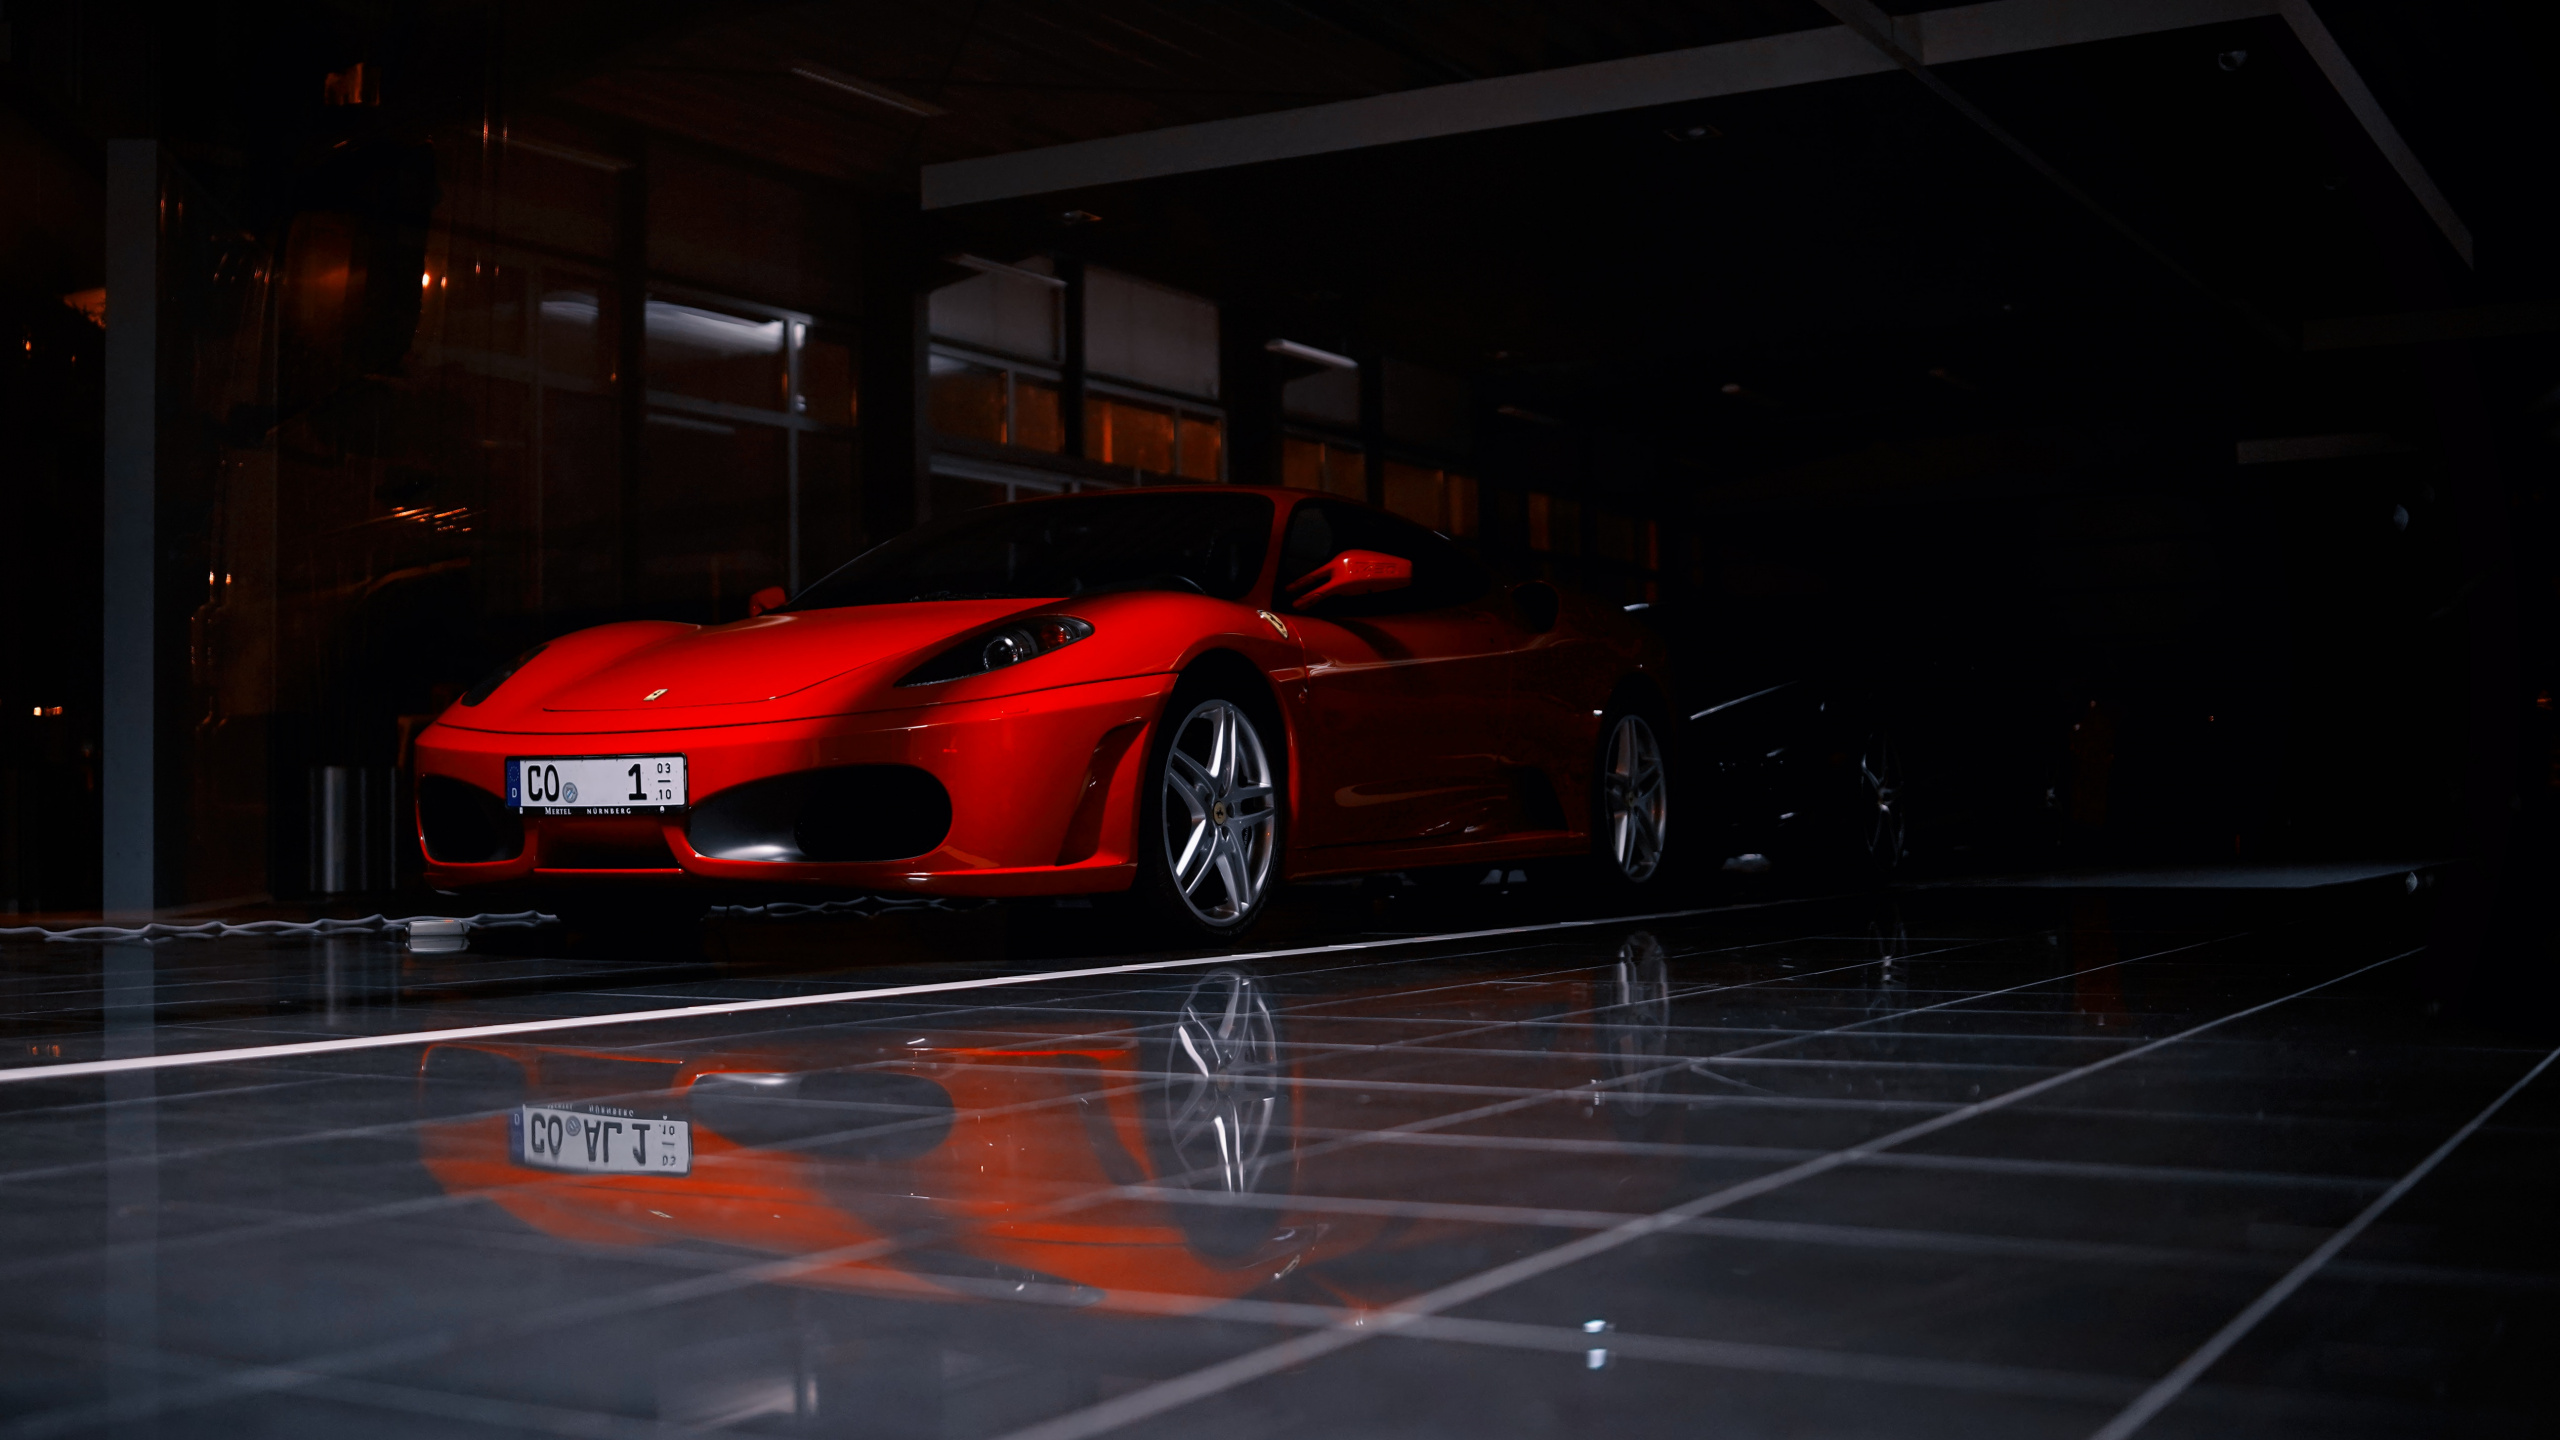 法拉利f430, Ferrari, 兰博基尼, 超级跑车, 法拉利812超快 壁纸 2560x1440 允许